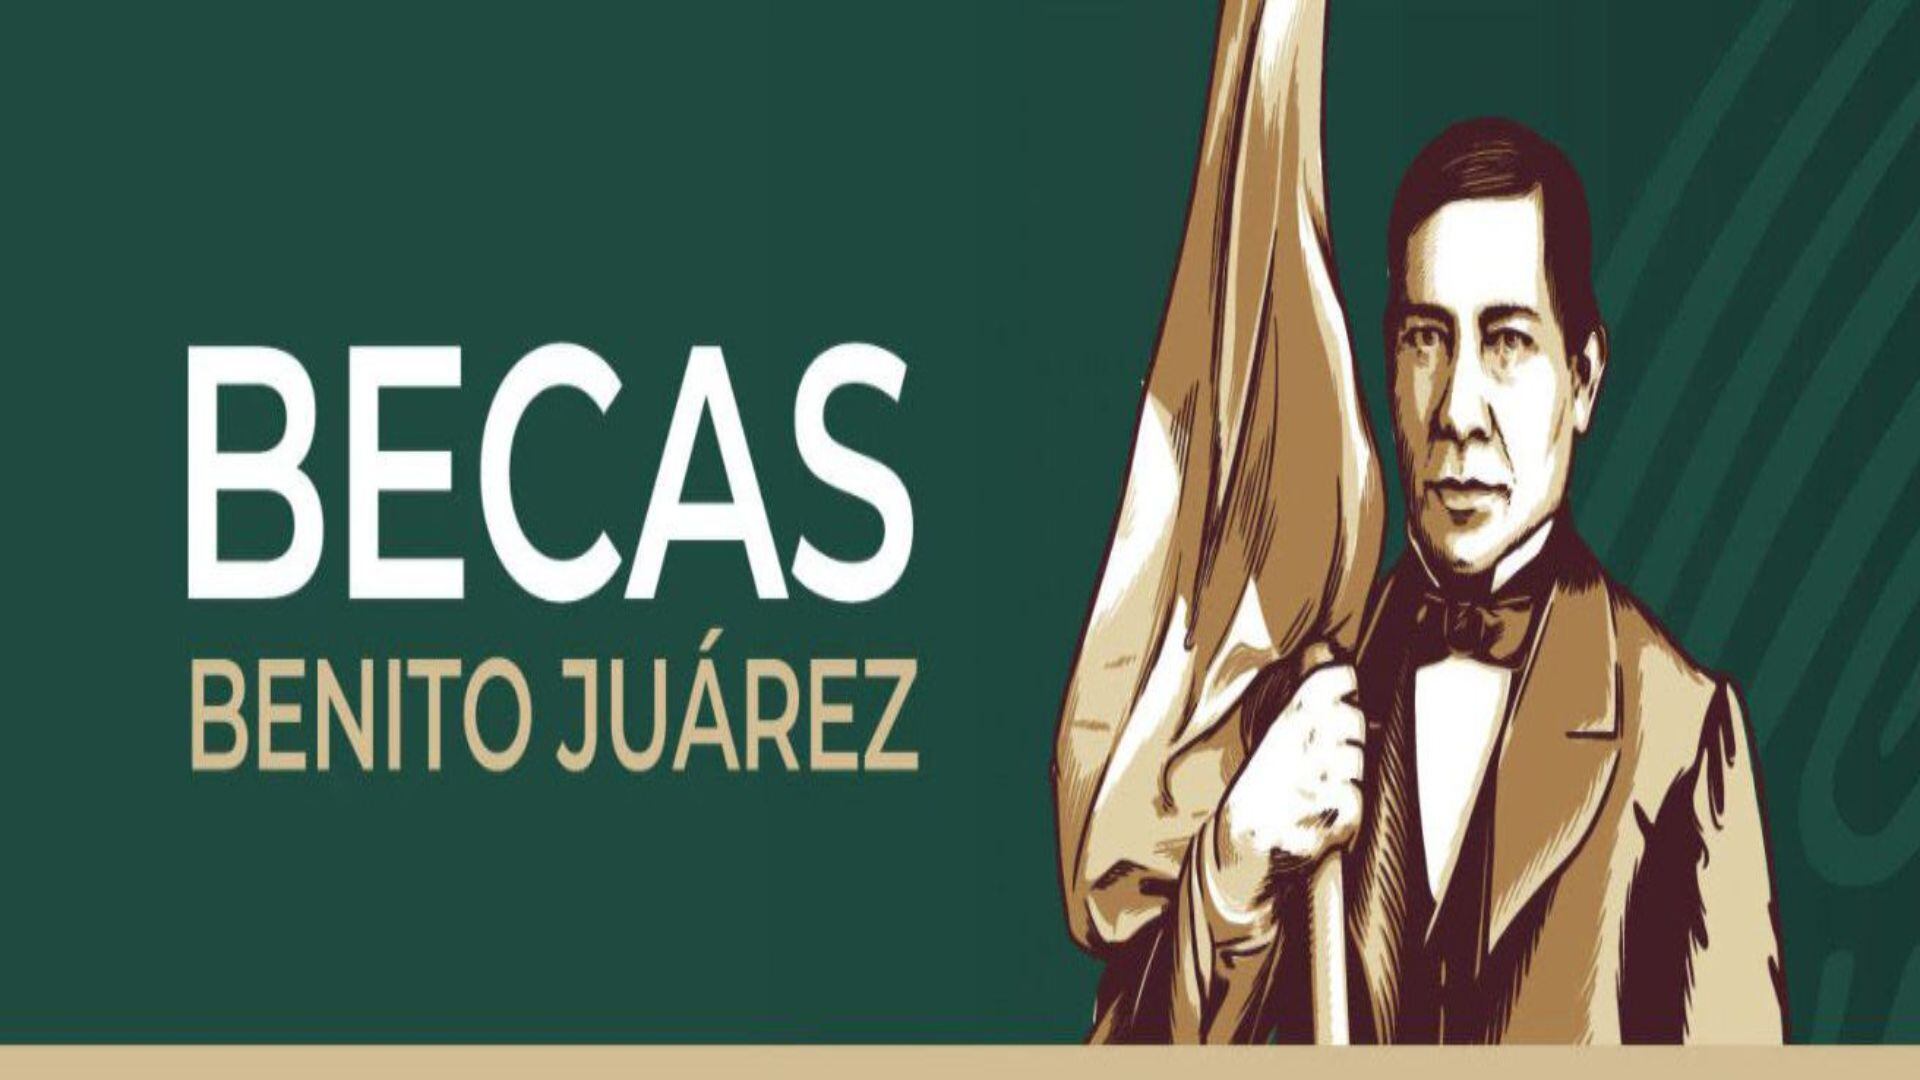 La beca Benito Juárez está destinada a estudiantes de escuelas públicas (Beca Benito Juárez)